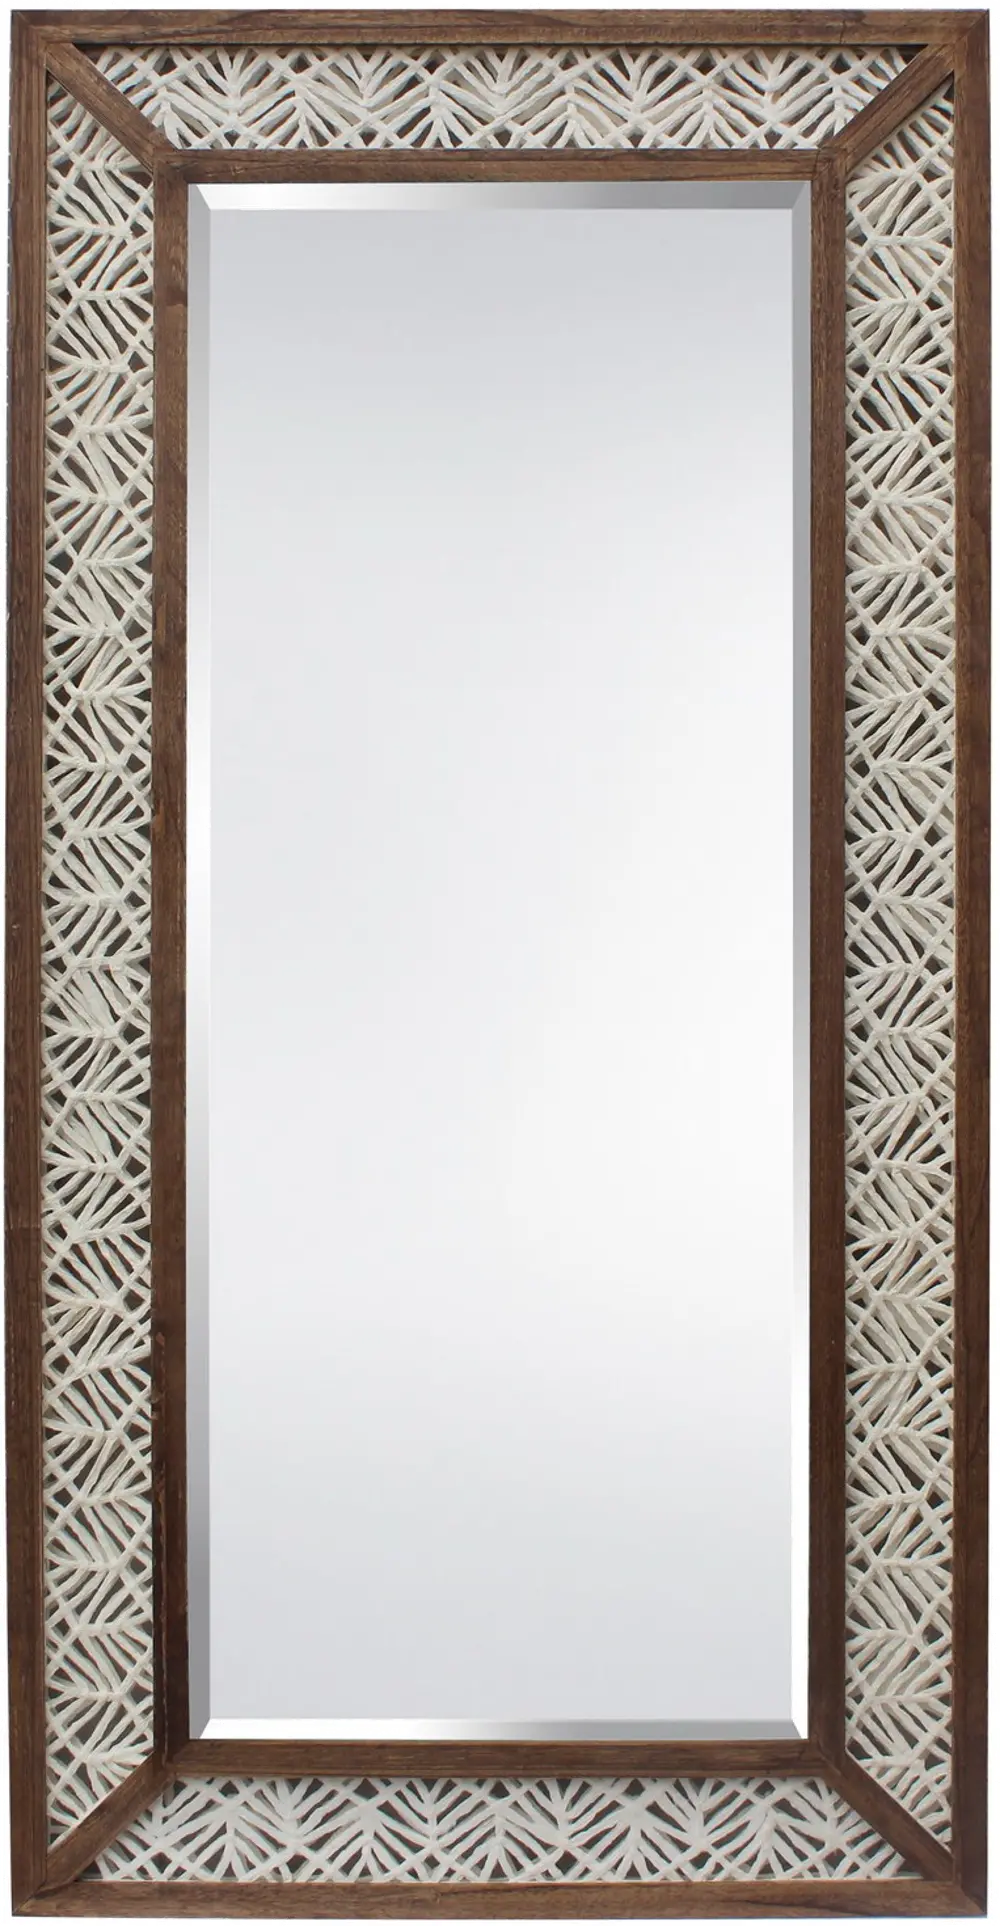 Paper Art Rustic Brown Framed Floor Mirror-1